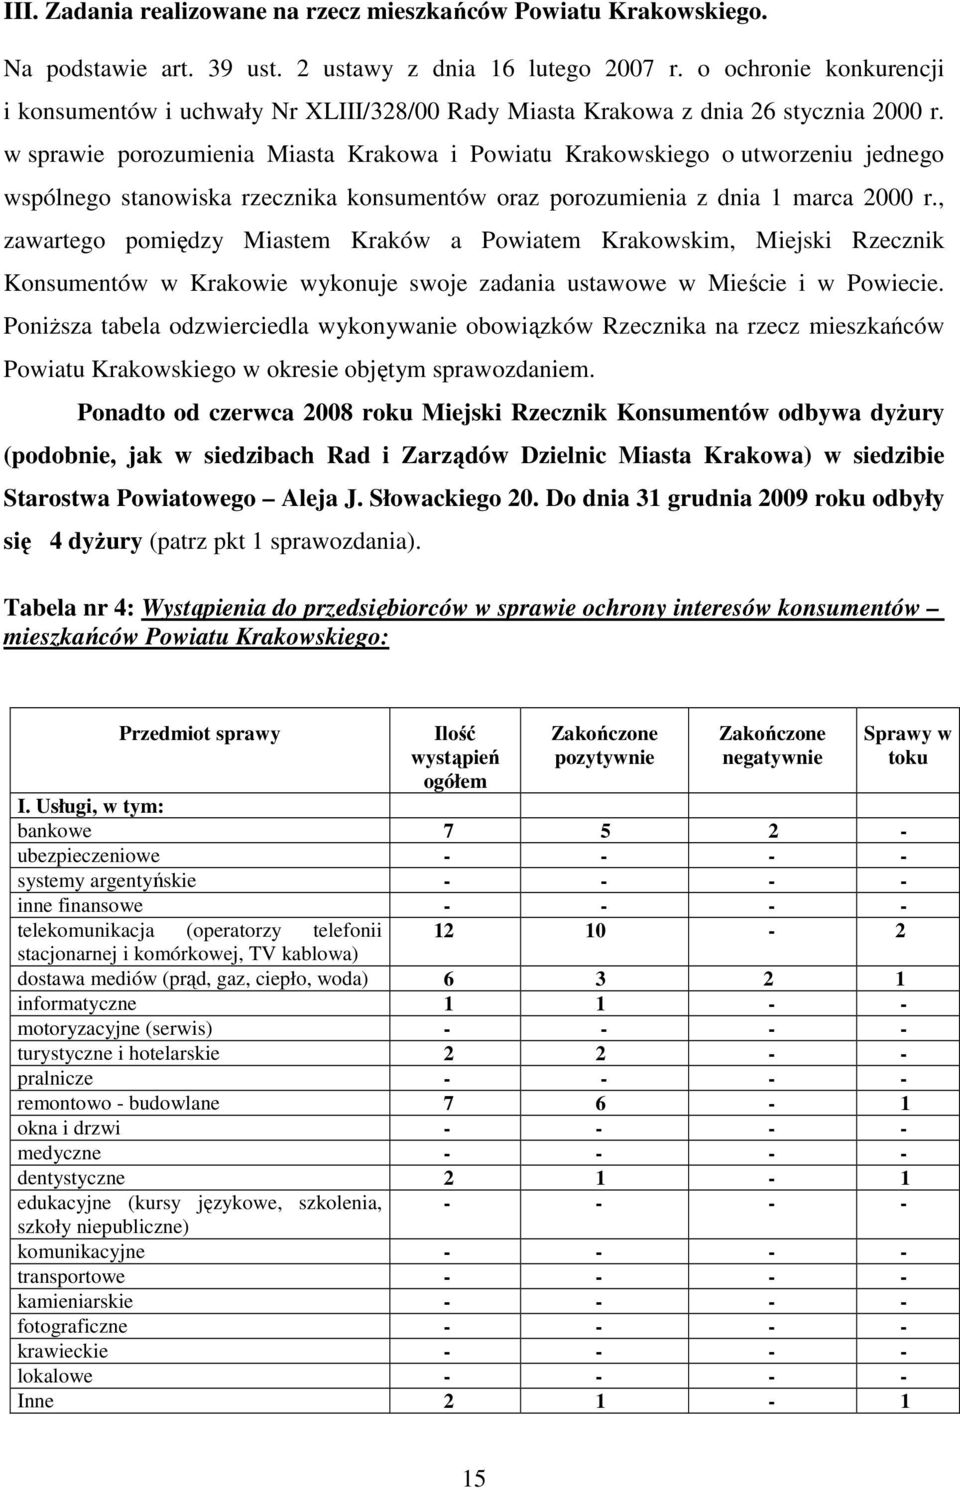 w sprawie porozumienia Miasta Krakowa i Powiatu Krakowskiego o utworzeniu jednego wspólnego stanowiska rzecznika konsumentów oraz porozumienia z dnia 1 marca 2000 r.